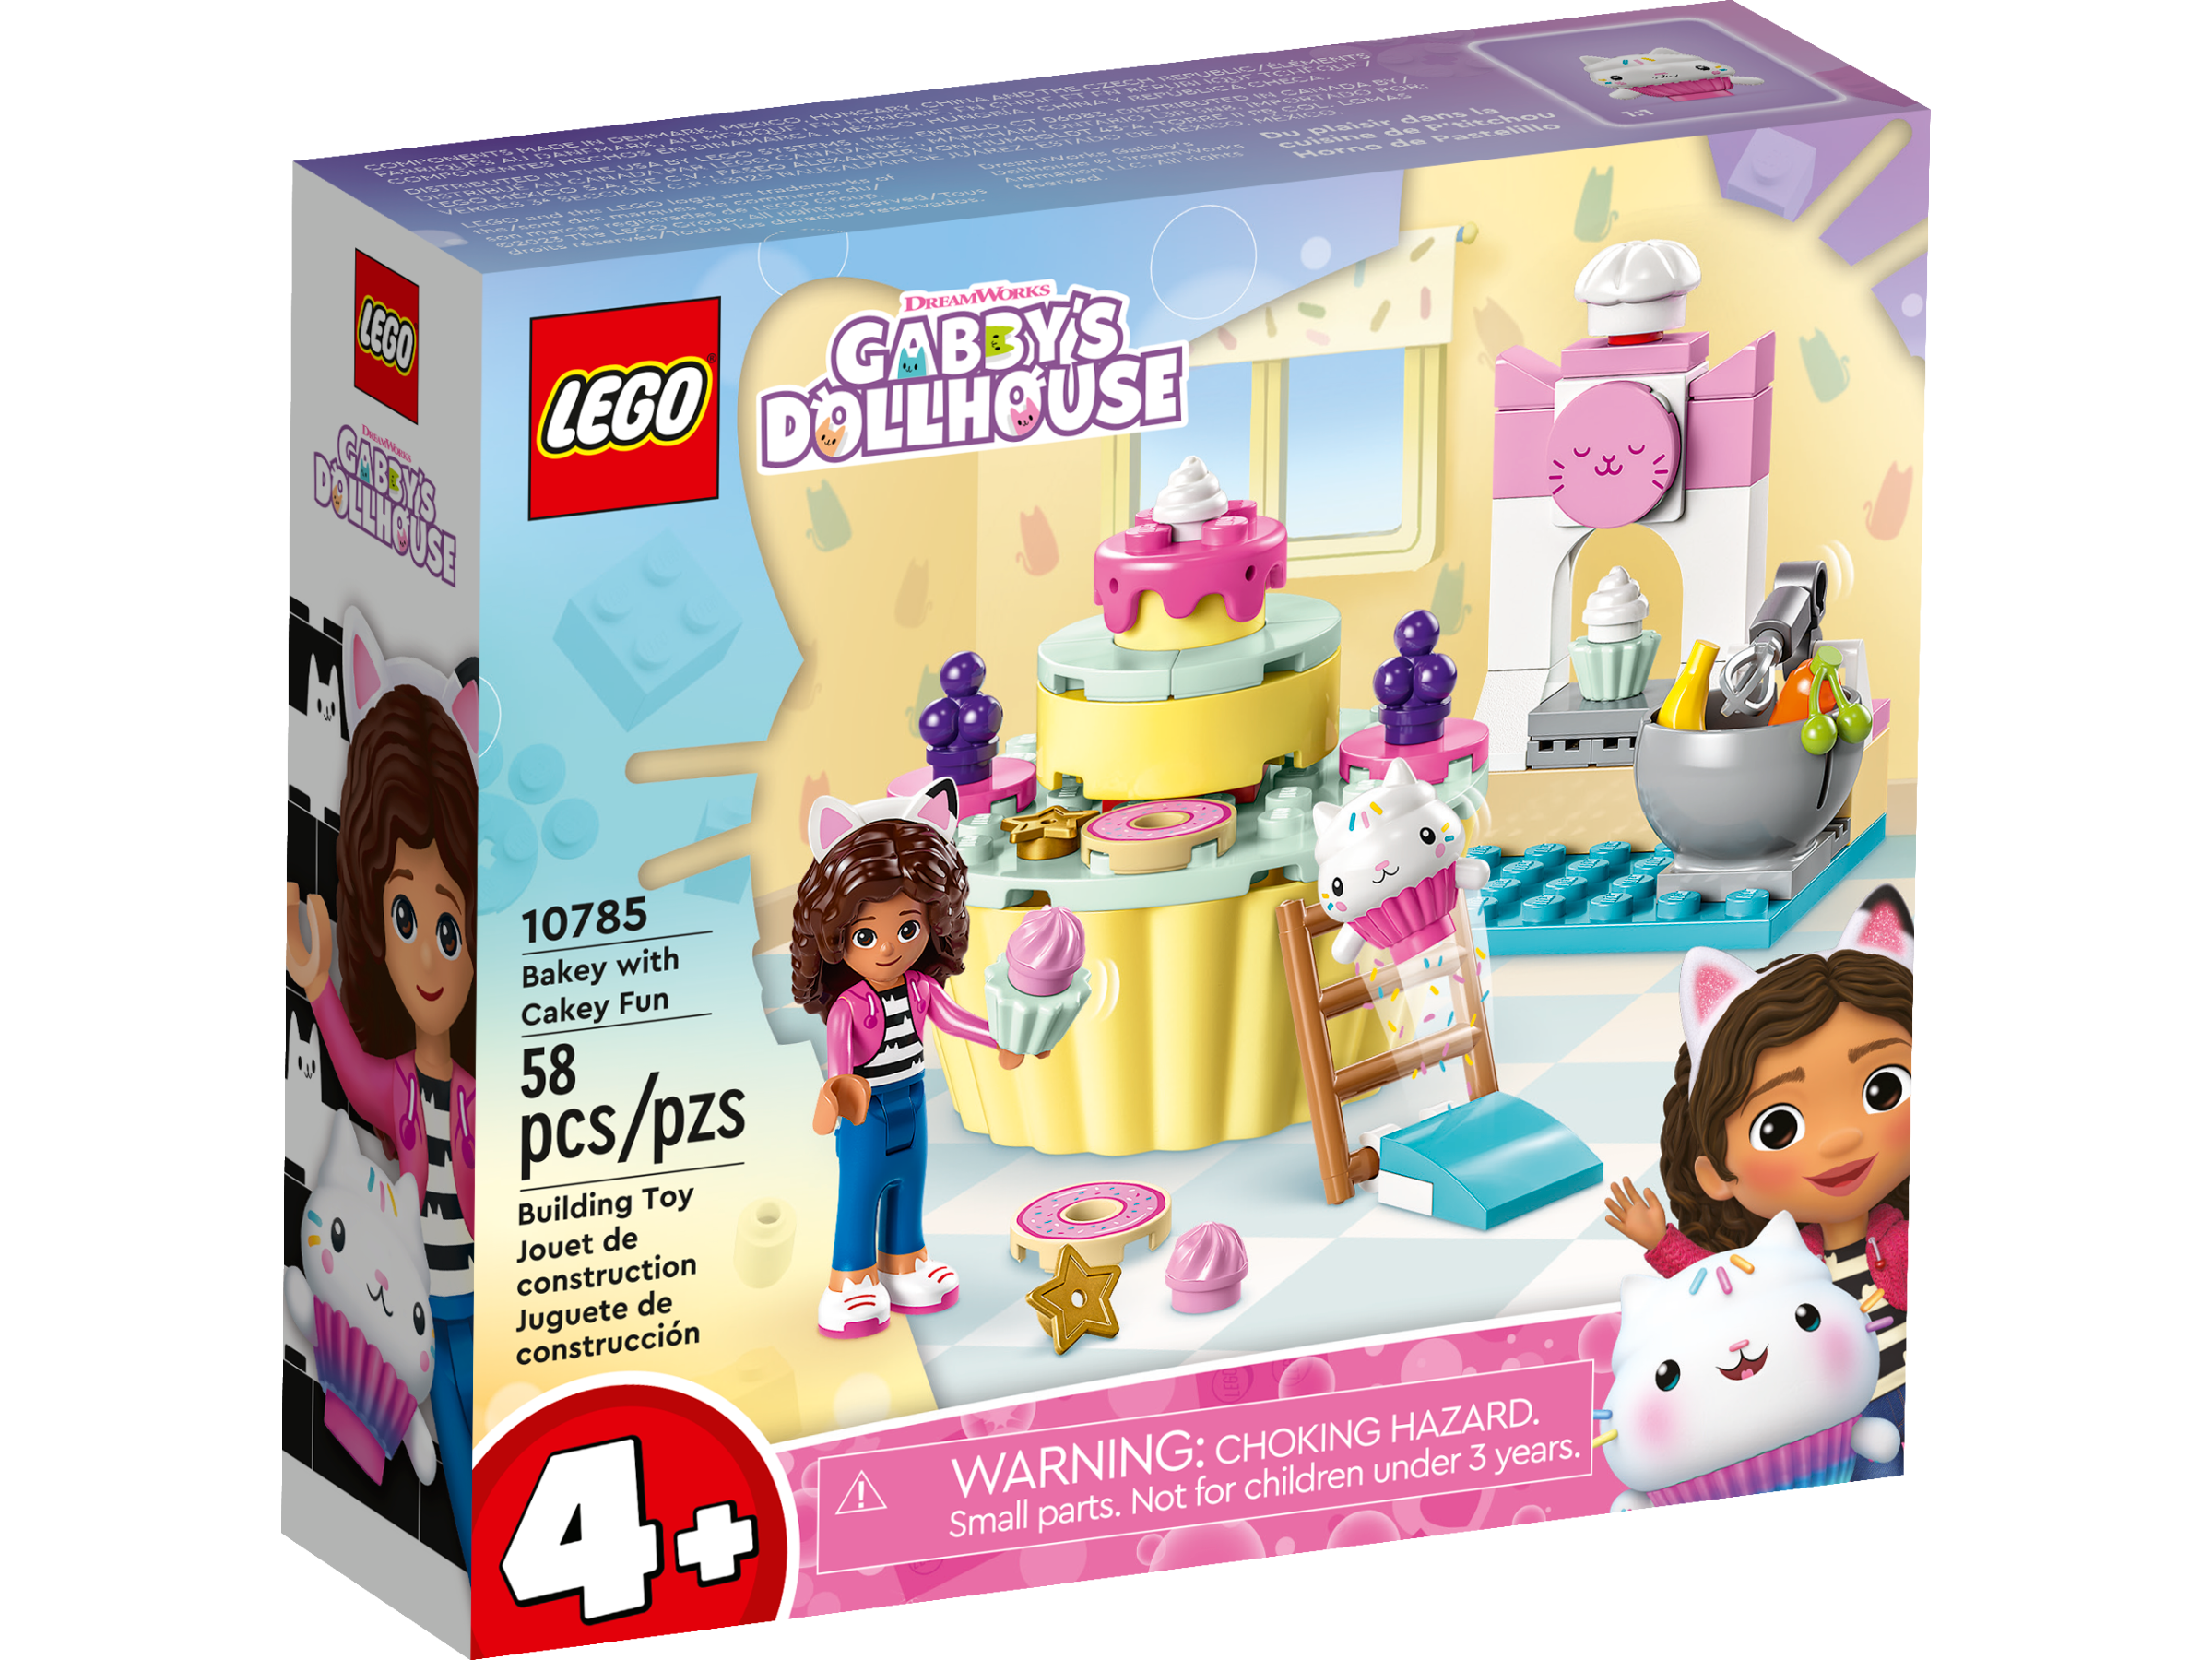 Gabby y su casa de muñecas, llega la mundo LEGO - Nacion Juguetes